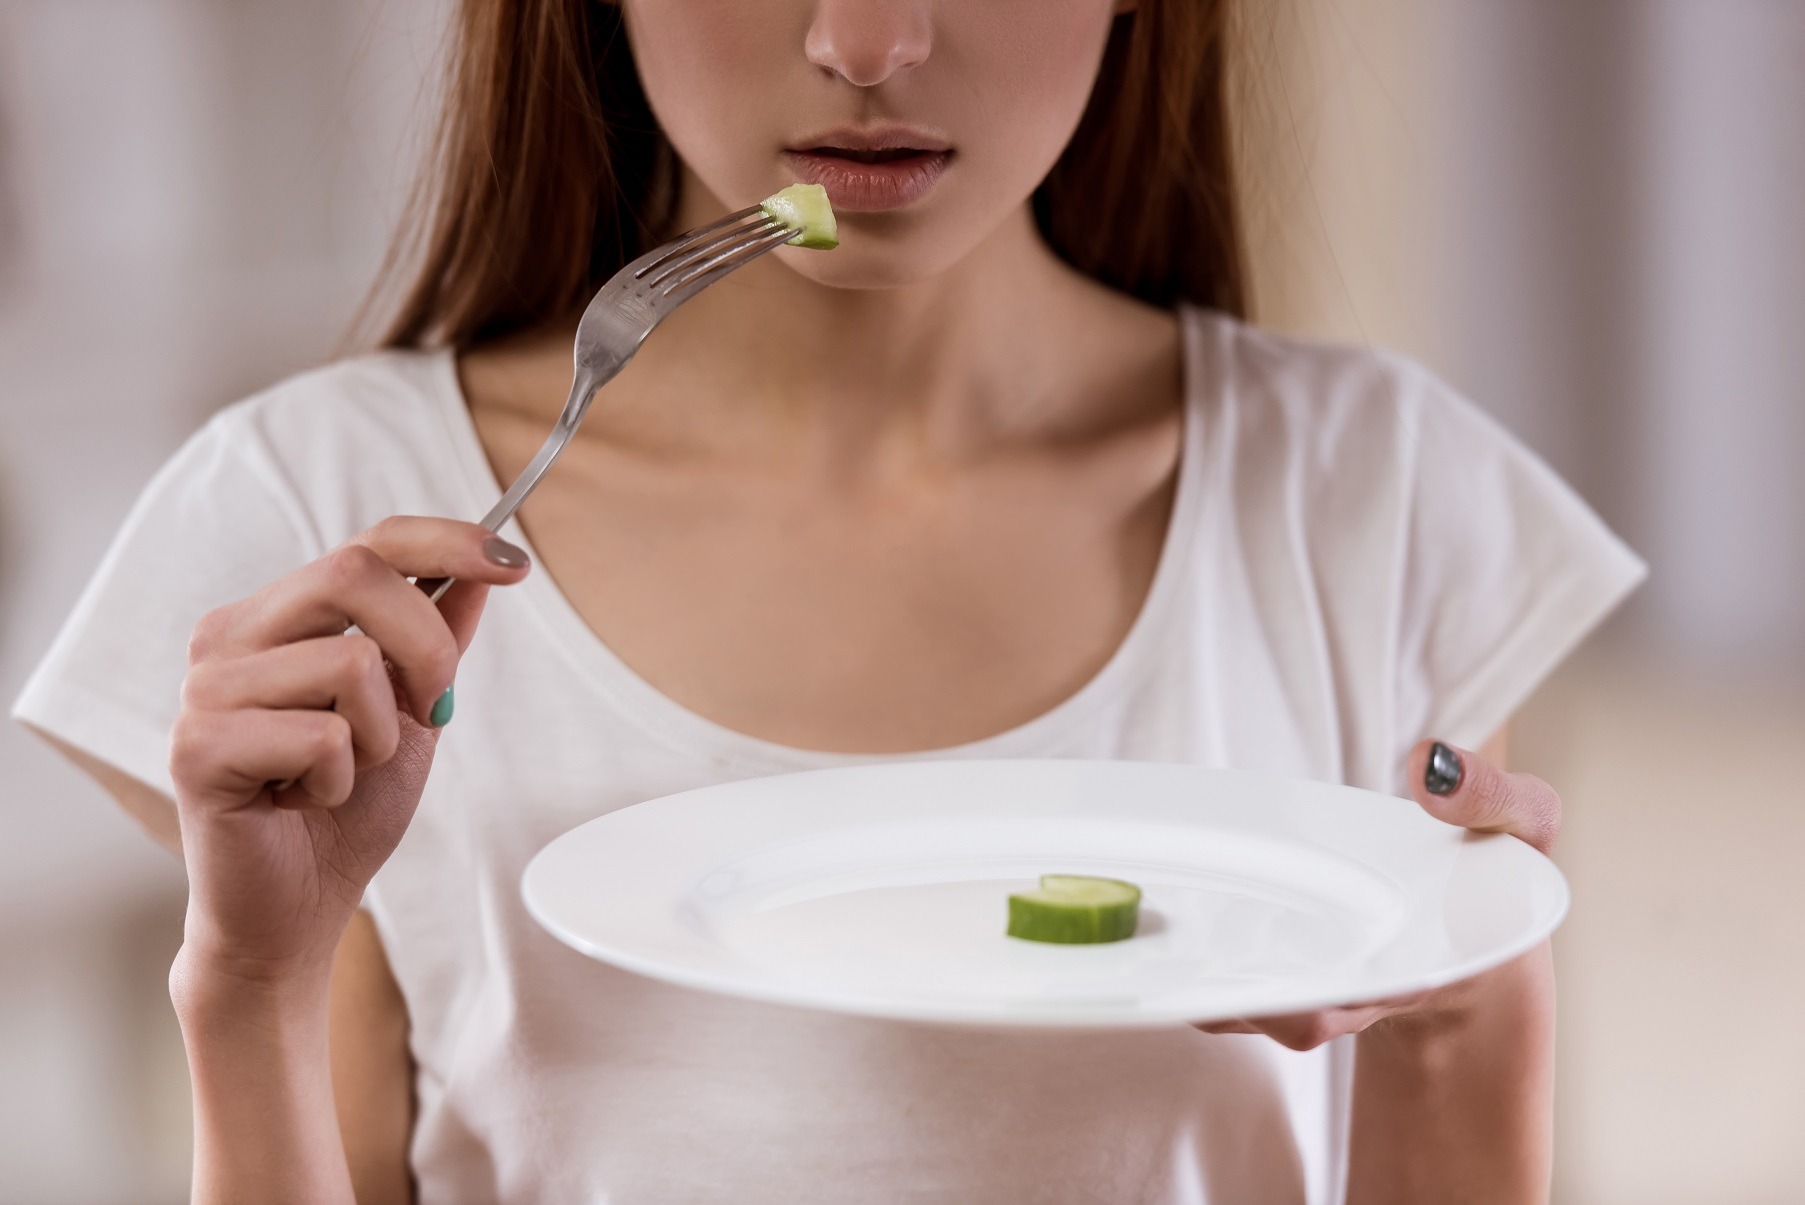 Tulburările de alimentație la adolescenți – ce rol are social media